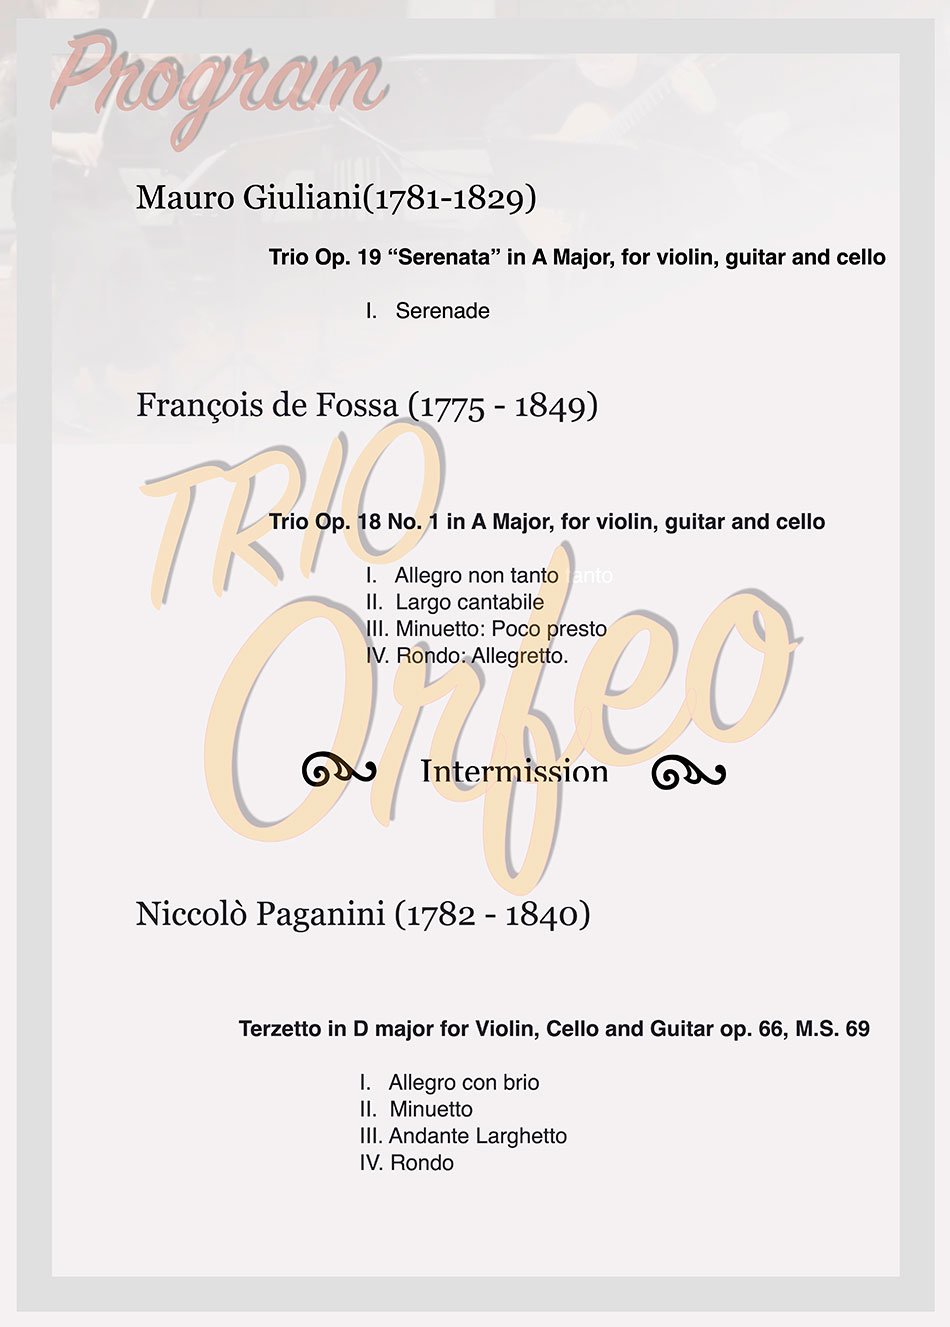 PROGRAM    Francois de Fossa (1775 - 1849)   Trio Op. 18 No. 1 in A Major, for violin, guitar and cello (한국 초연)  I. Allegro non tanto  II. Largo cantabile  III. Minuetto: Poco presto  IV. Rondo: Allegretto    Niccolo Paganini (1782 - 1840)   Terzetto in D major for violin, cello and guitar Op. 66, M.S. 69  I. Allegro con brio  II. Minuetto  III. Andante Larghetto  IV. Rondo